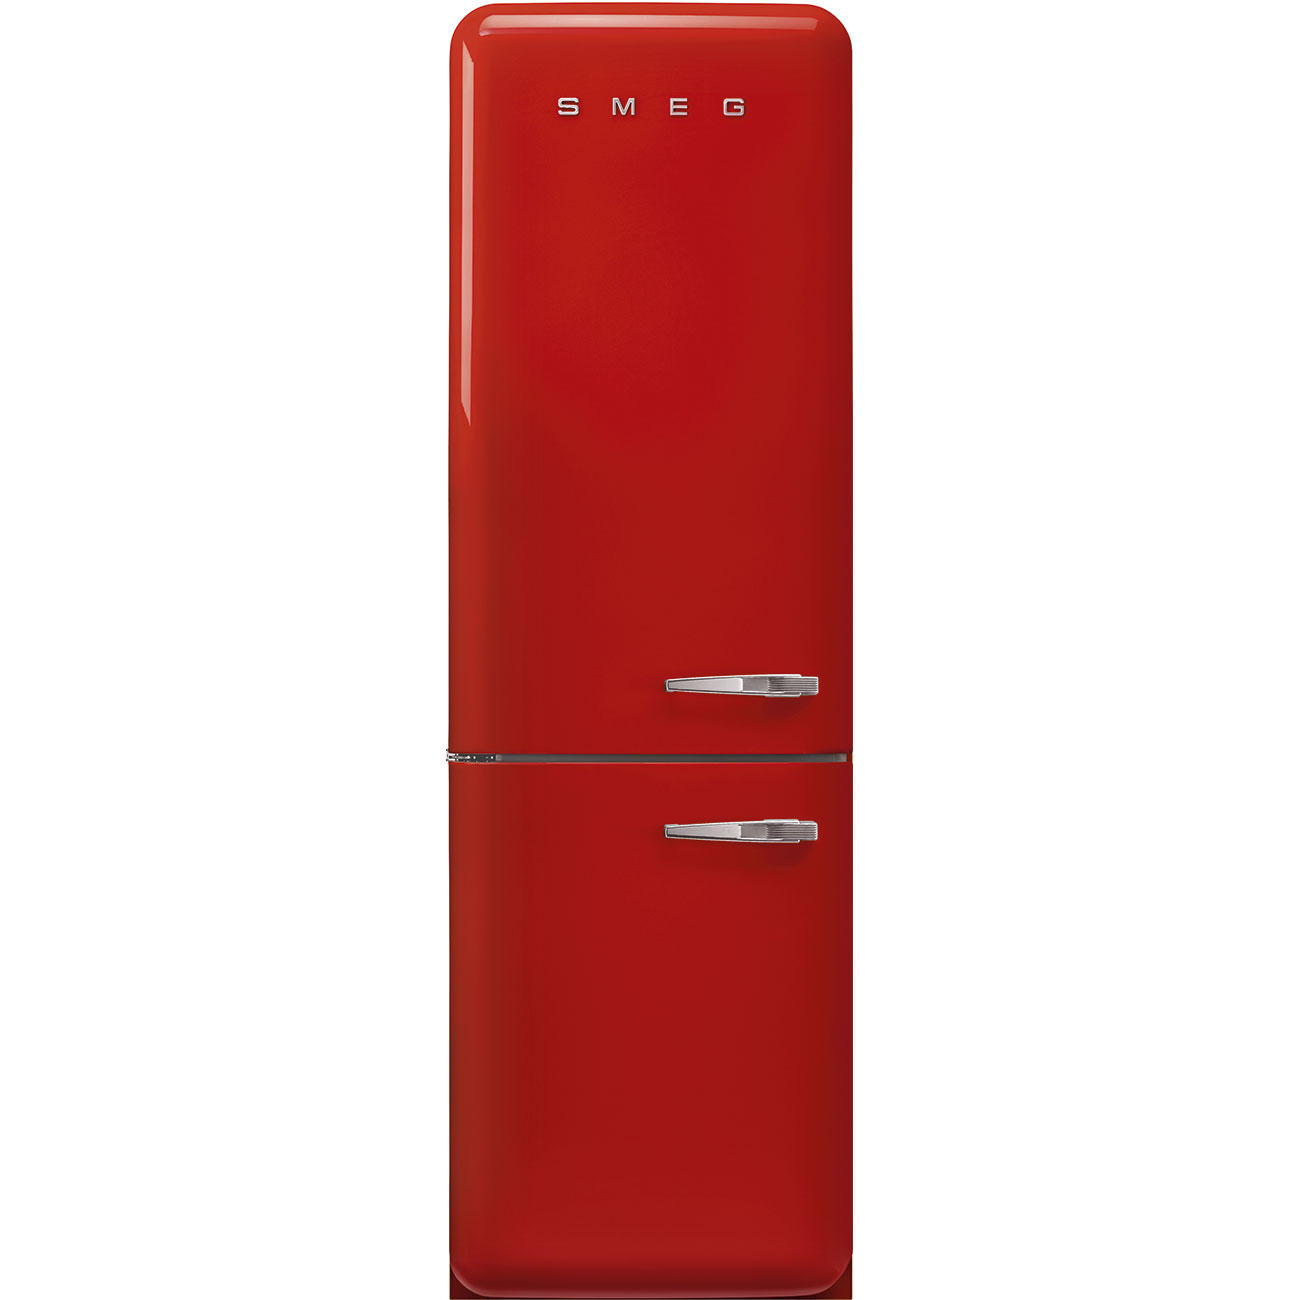 Купить холодильник 5 элемент. Smeg fab32rrd5. Холодильник Smeg fab38rrd5. Холодильник Смег двухдверный. Холодильник Смег красный.